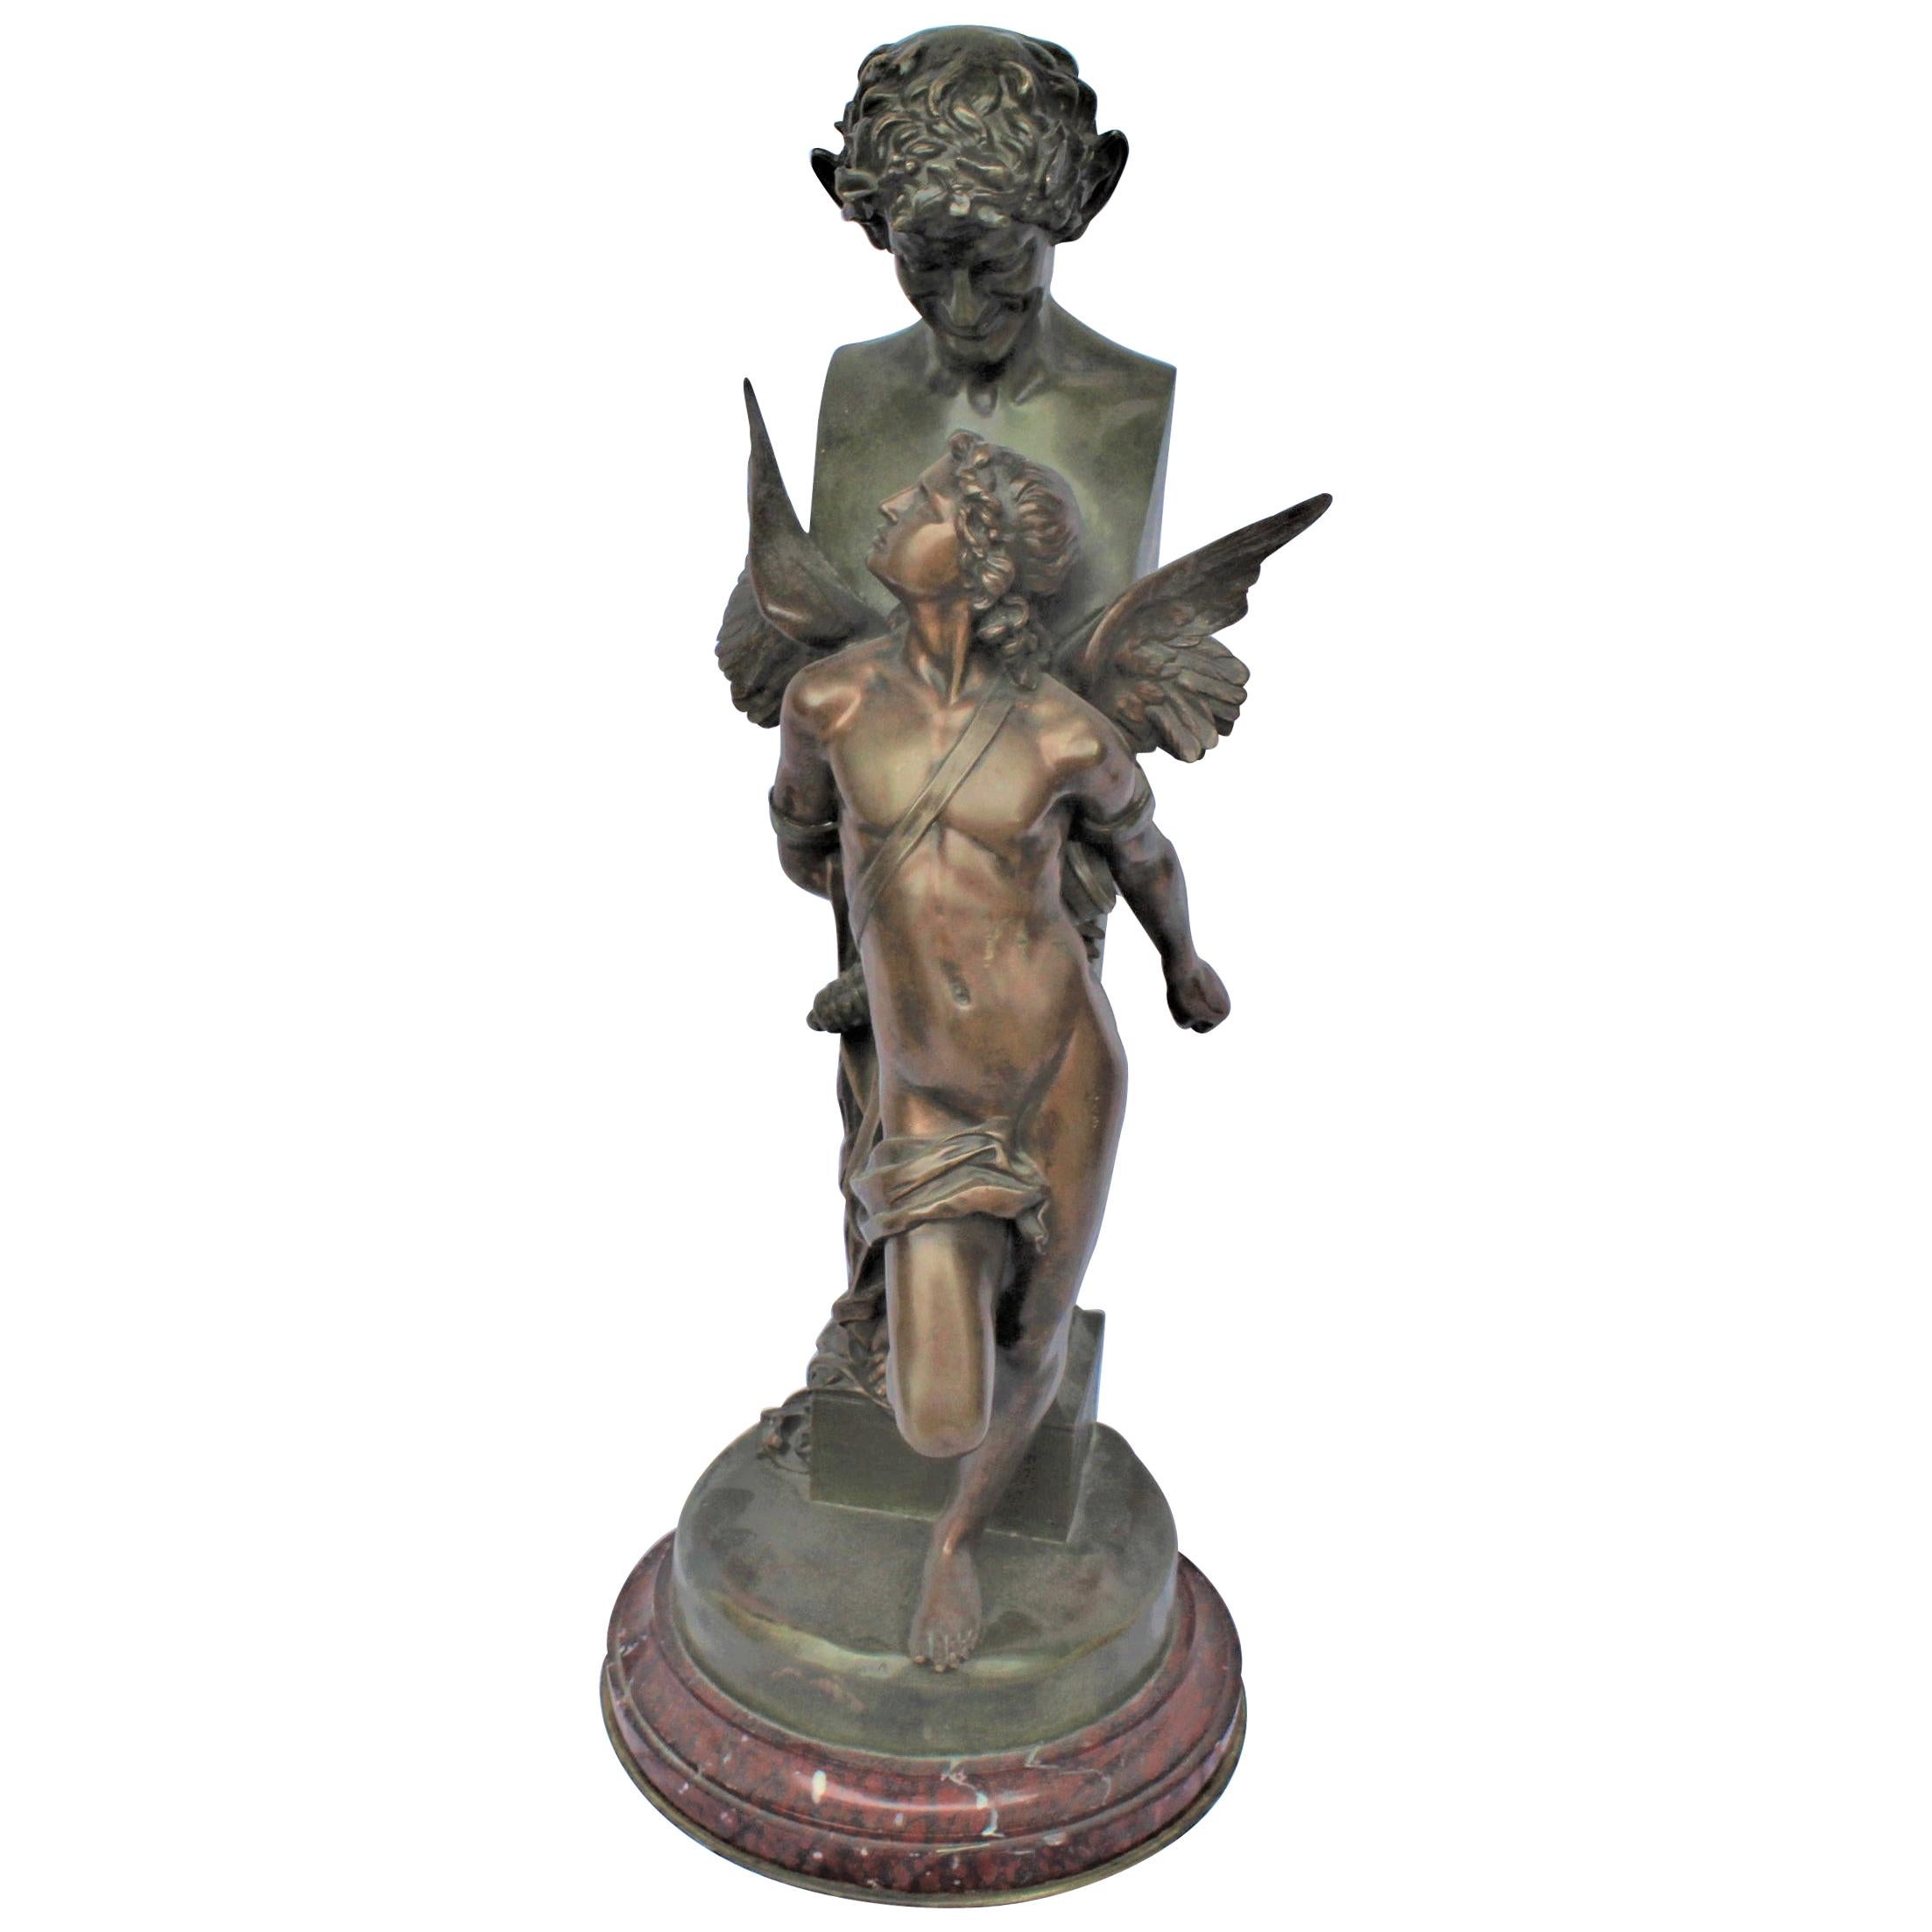 Bronze Sculpture, Double Figure, Antique, Signed F Sanzel   Large